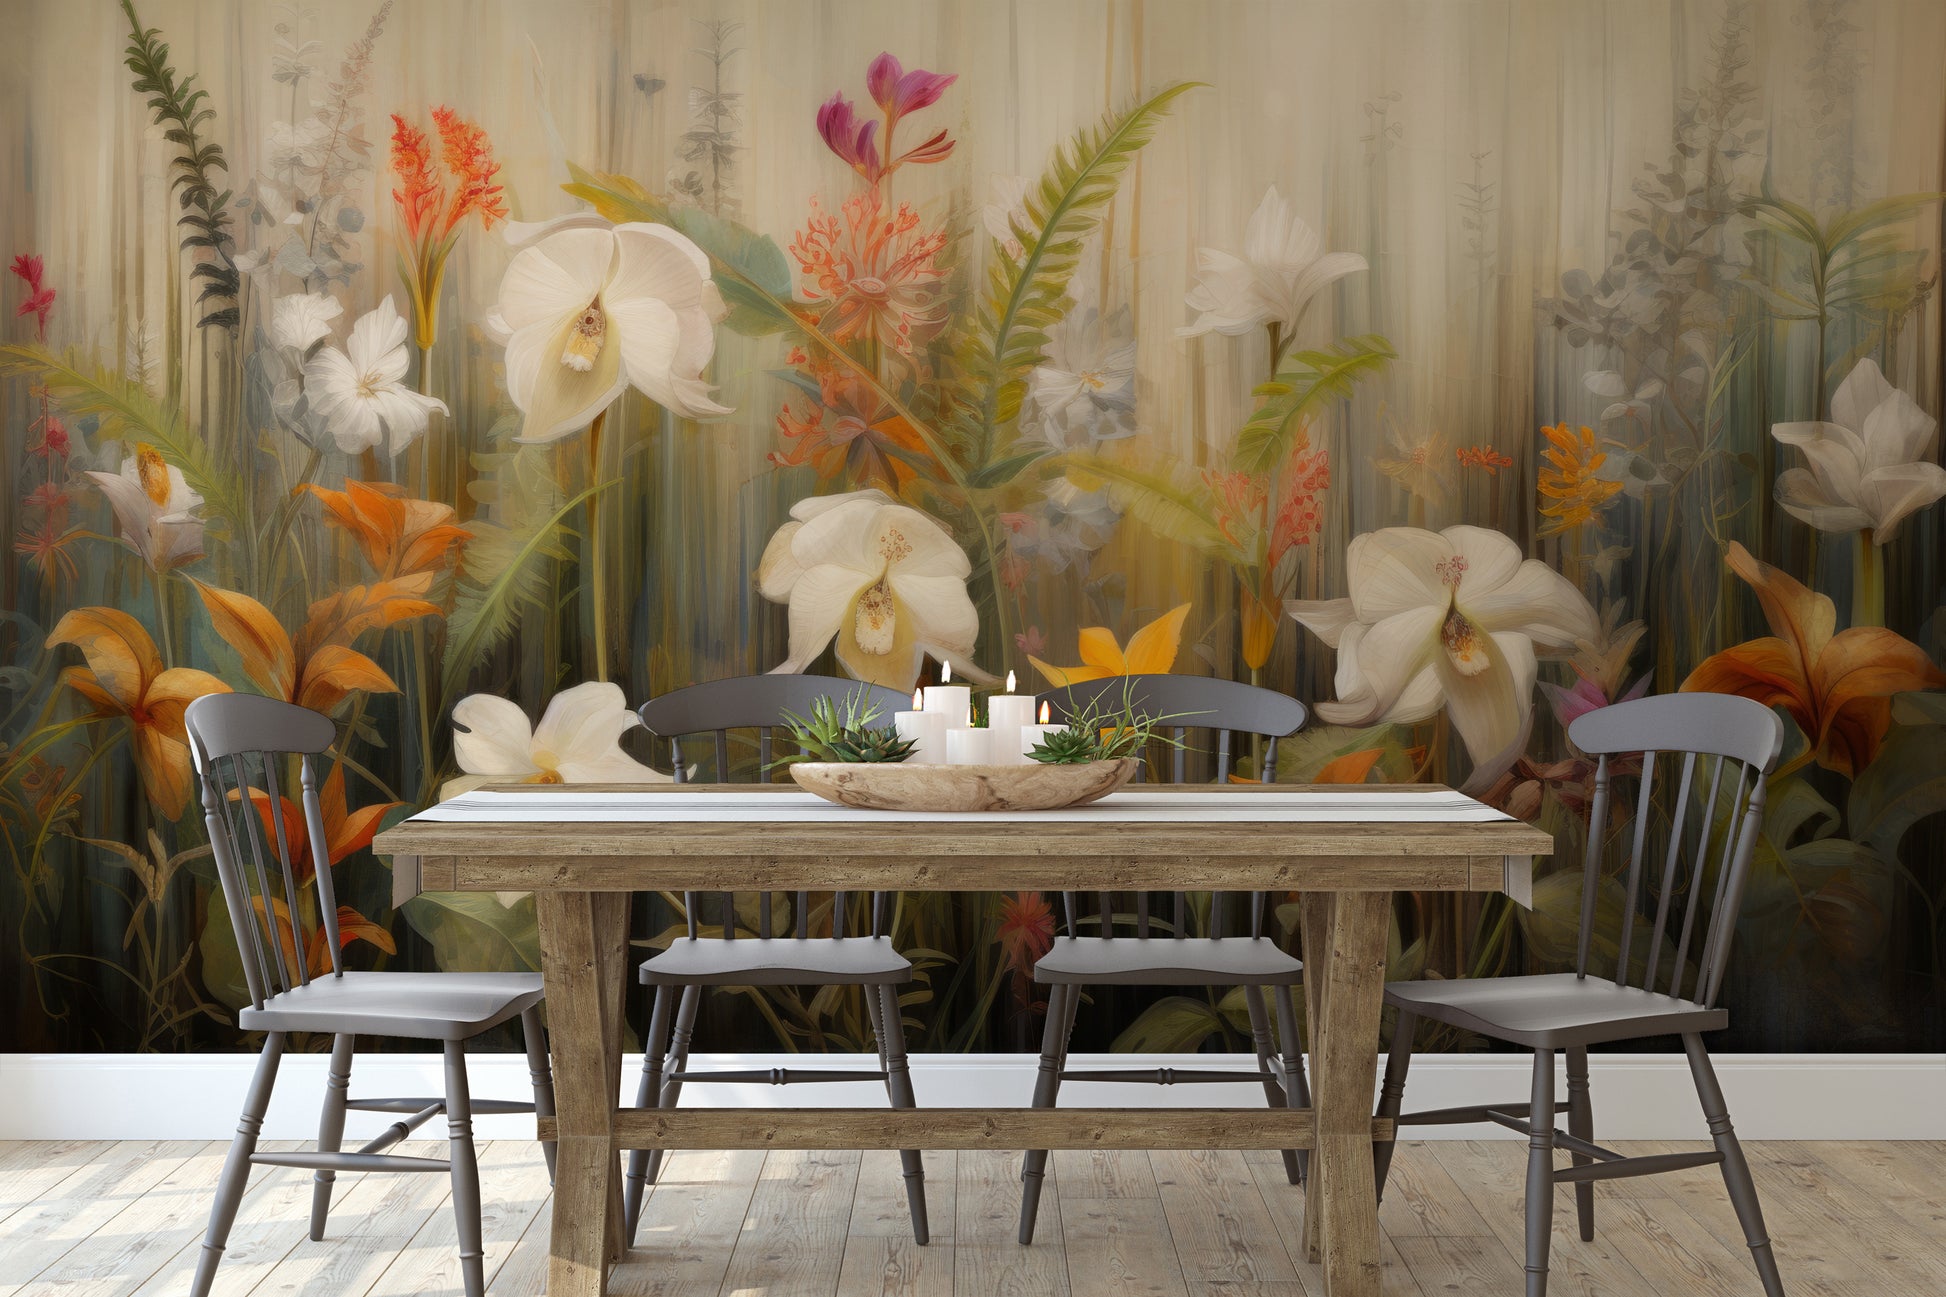 Fototapeta malowana o nazwie Exotic Garden Serenity pokazana w aranżacji wnętrza.